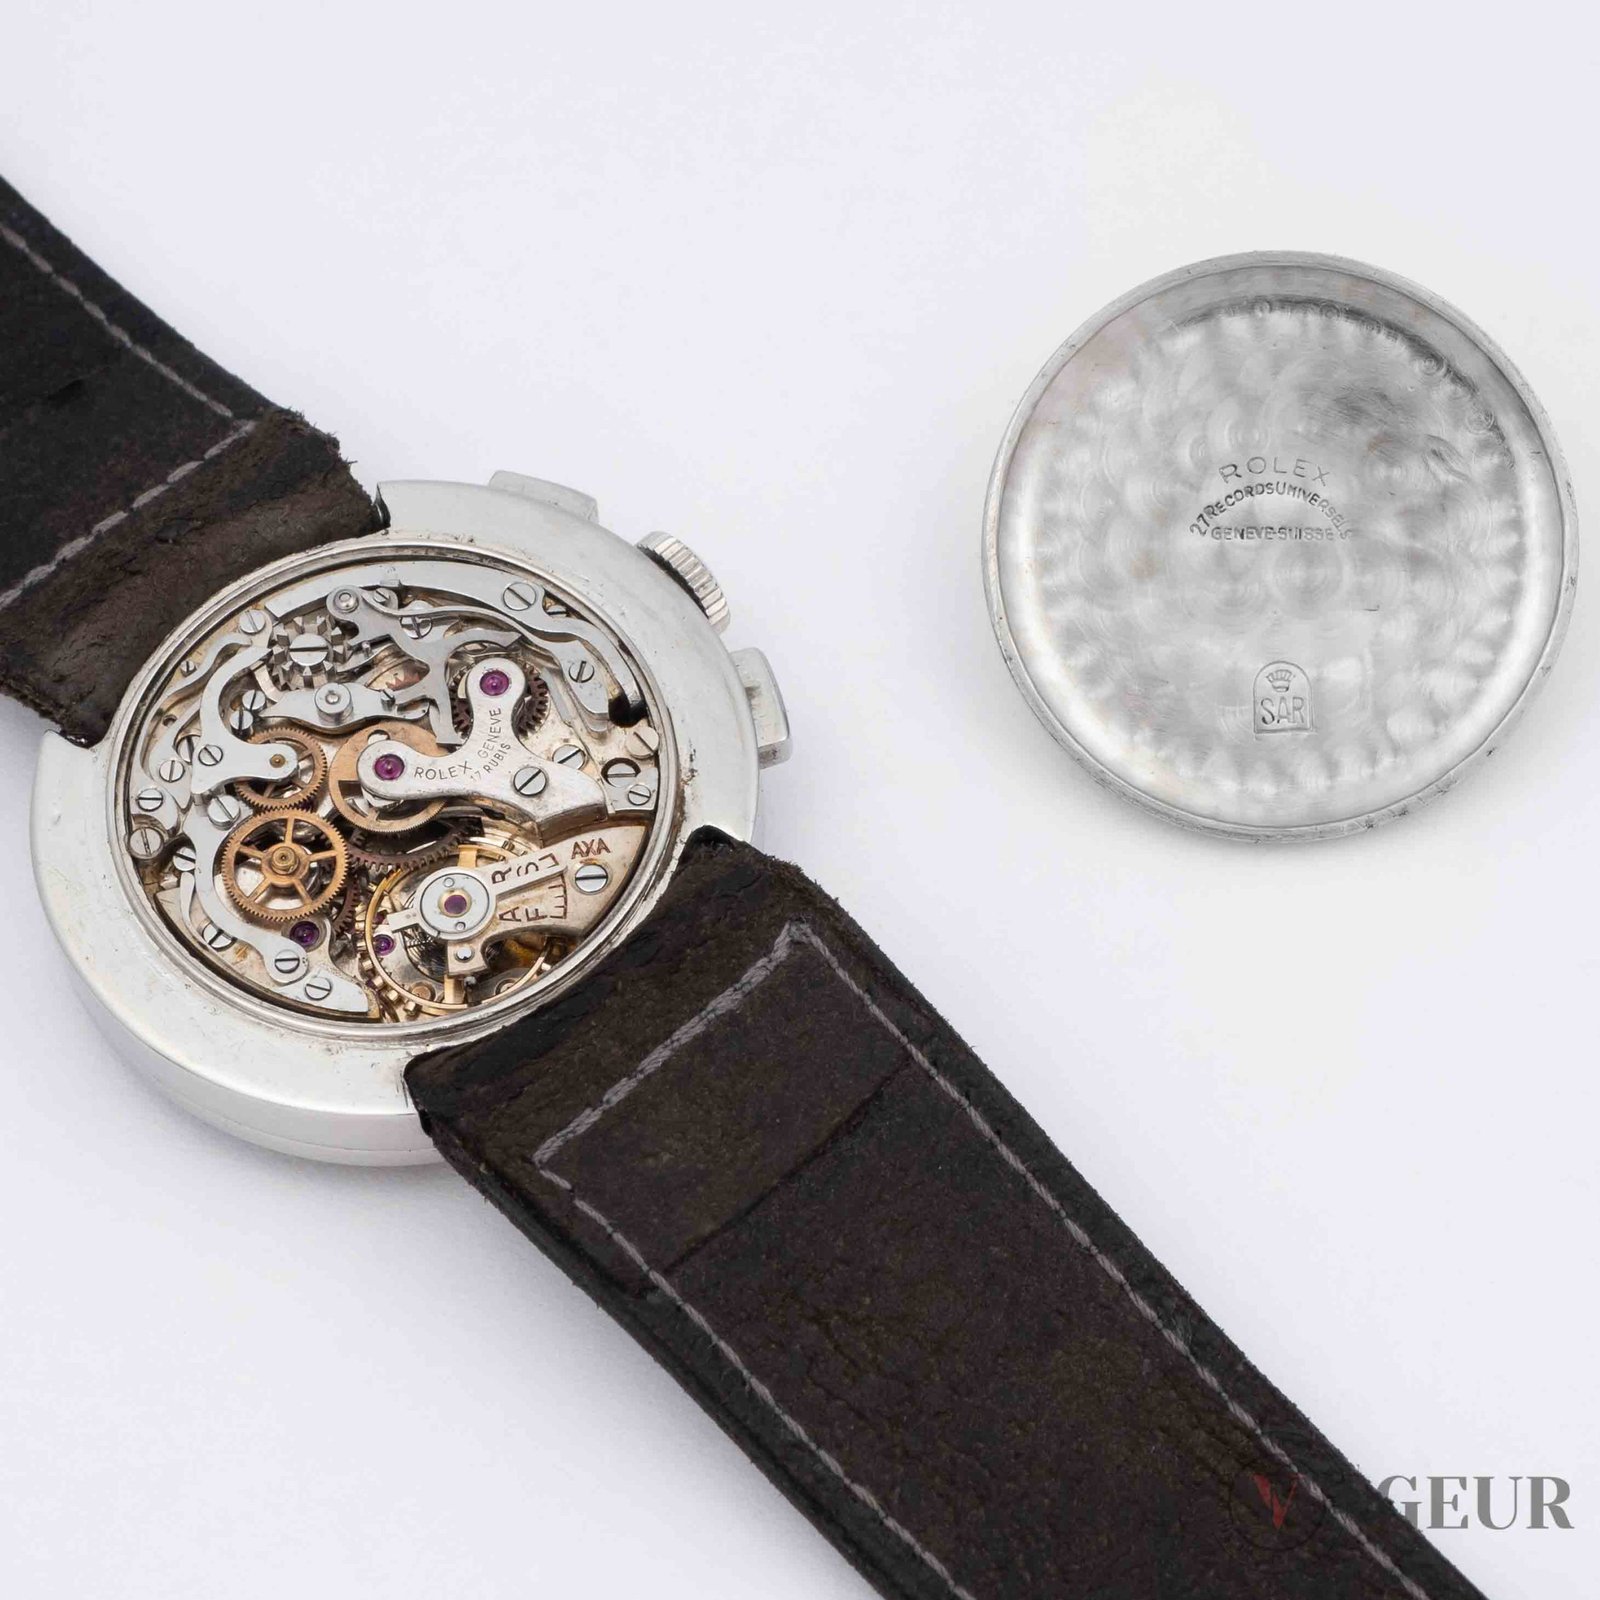 Rolex cronografo valjoux 69